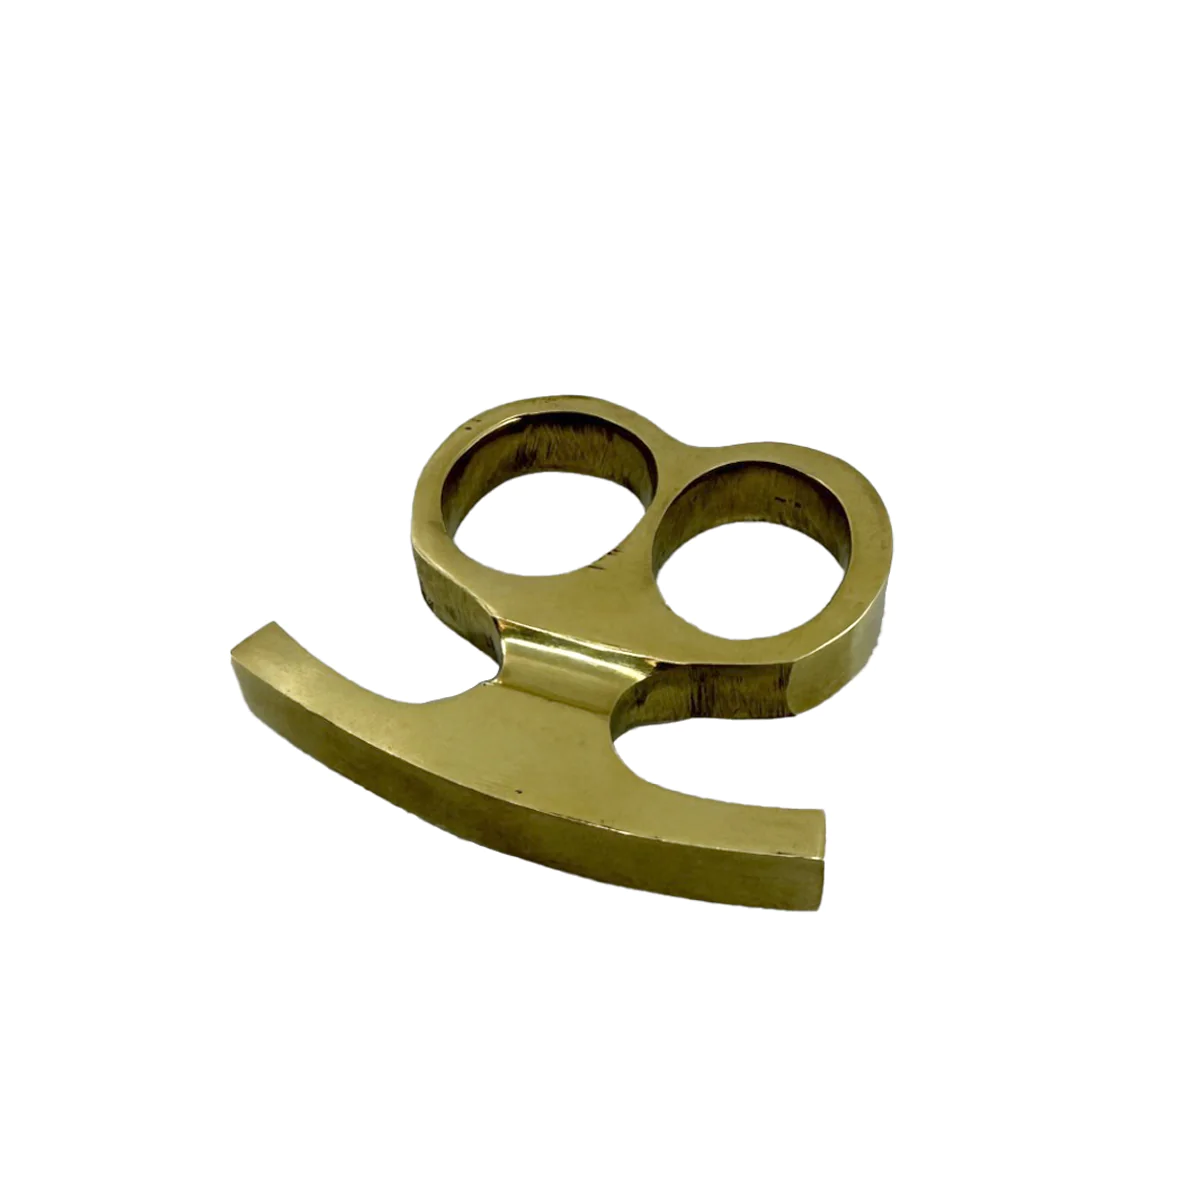 Brass Dual-Finger Defender - Solid 5.6 oz Brass Knuckle